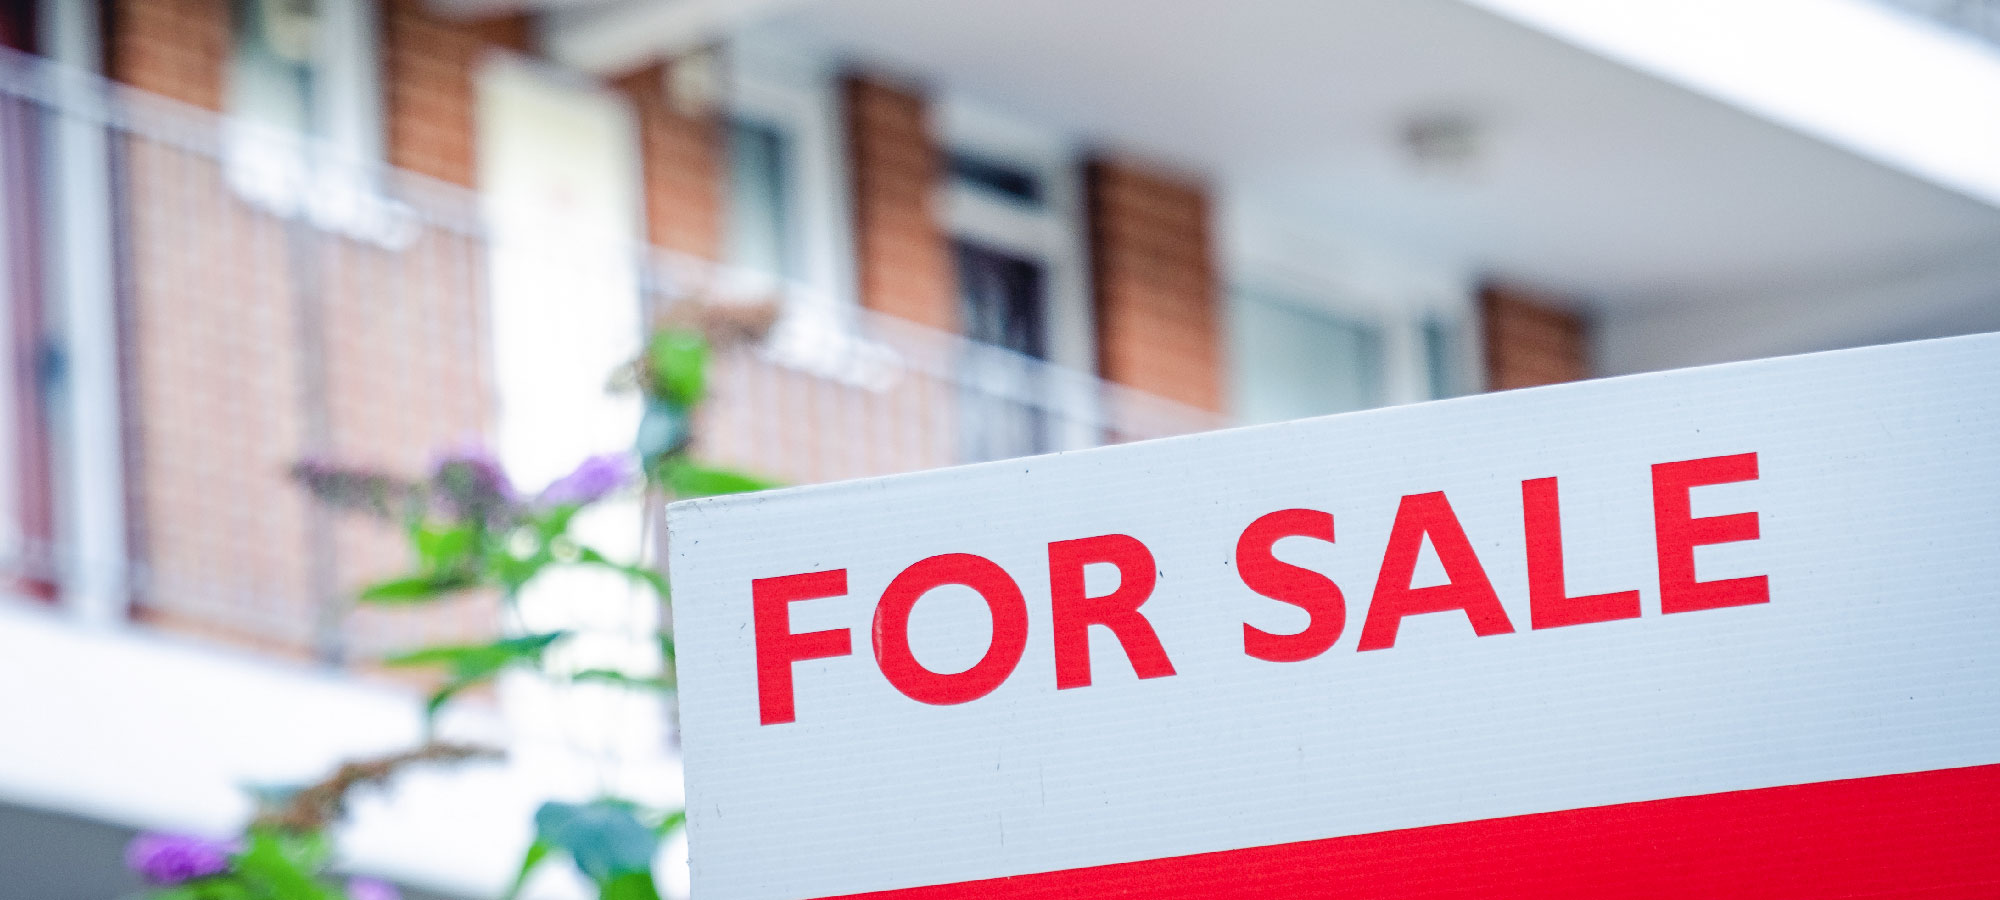 Hoelang staat een woning gemiddeld te koop? moet je ingrijpen?